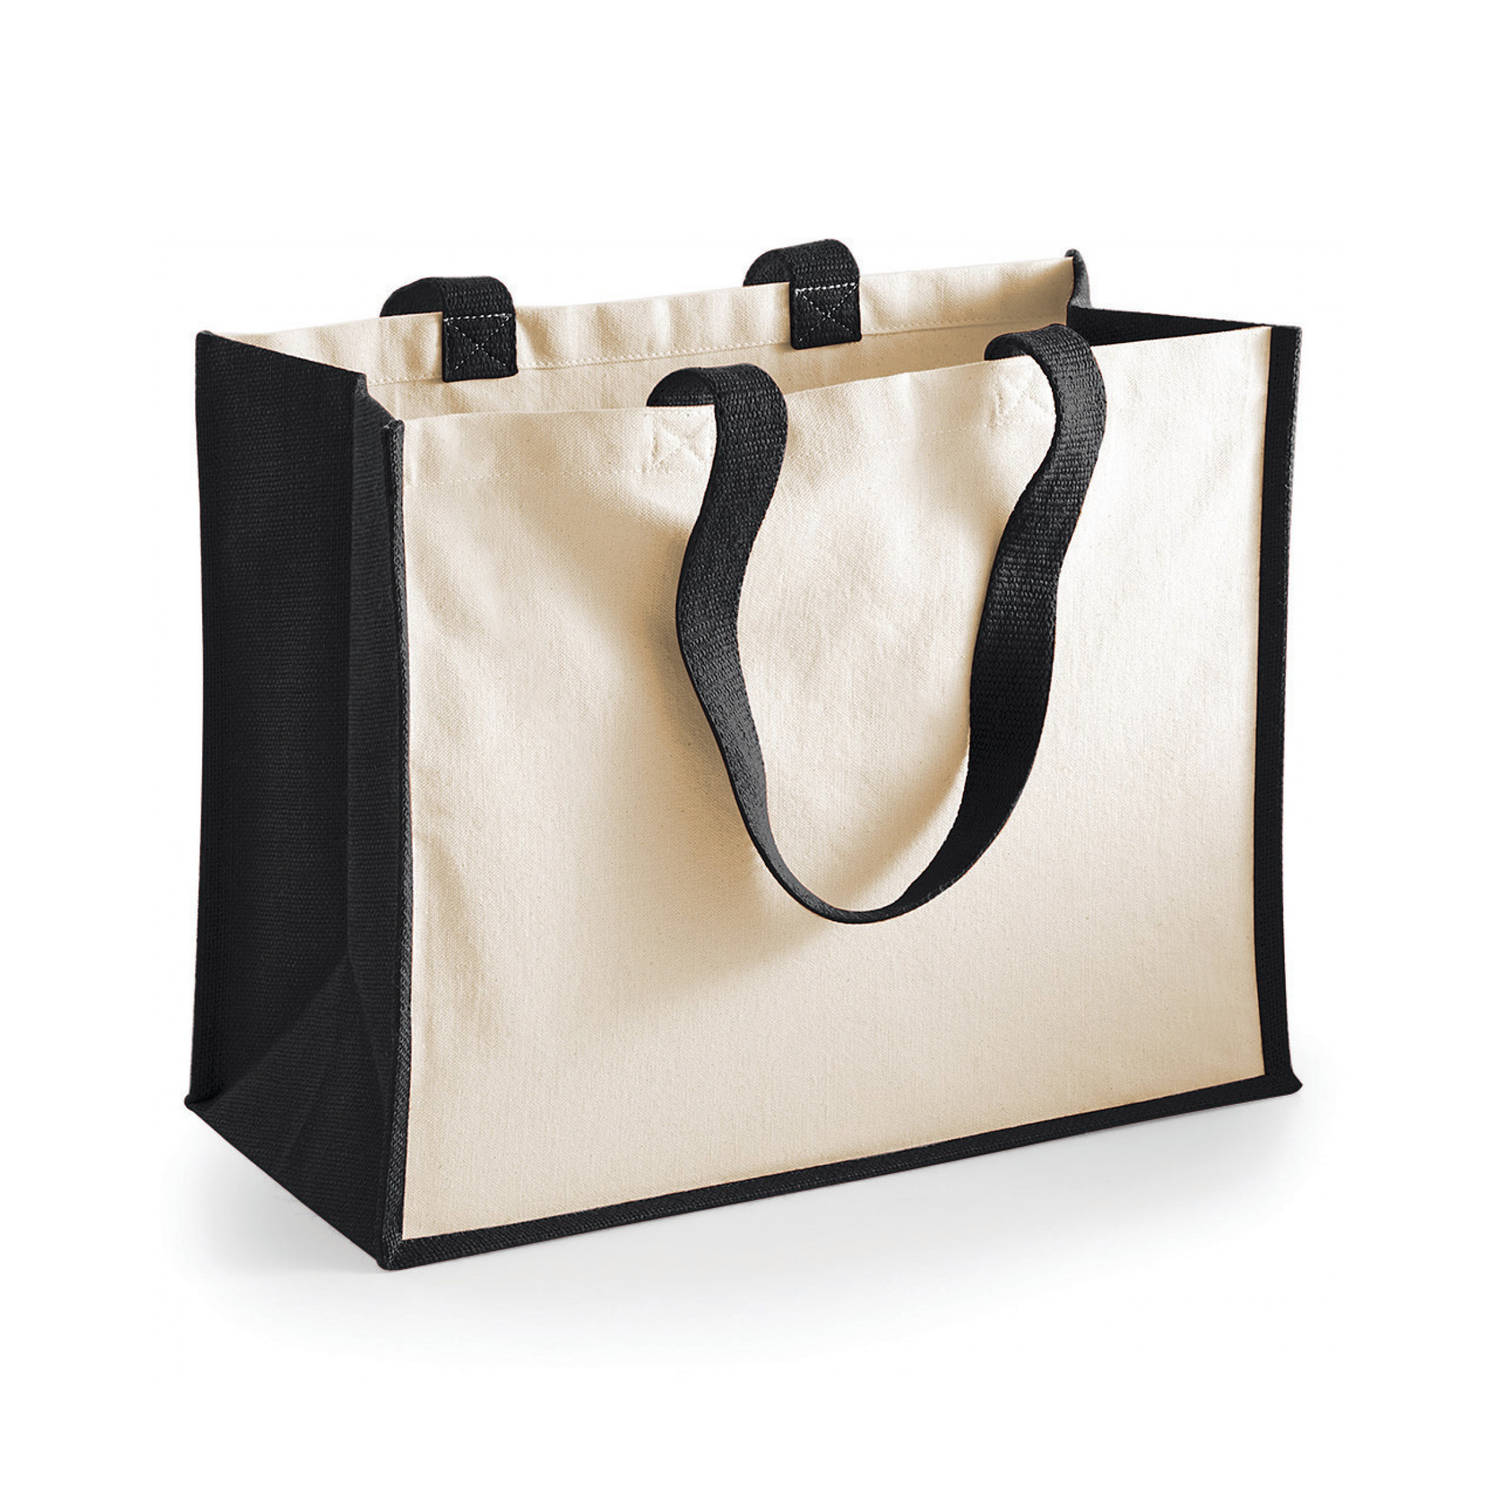 De layout elegant Vrouw Jute katoenen boodschappentas in het zwart/natural 44 x 33 x 19 cm -  Boodschappentassen | Blokker